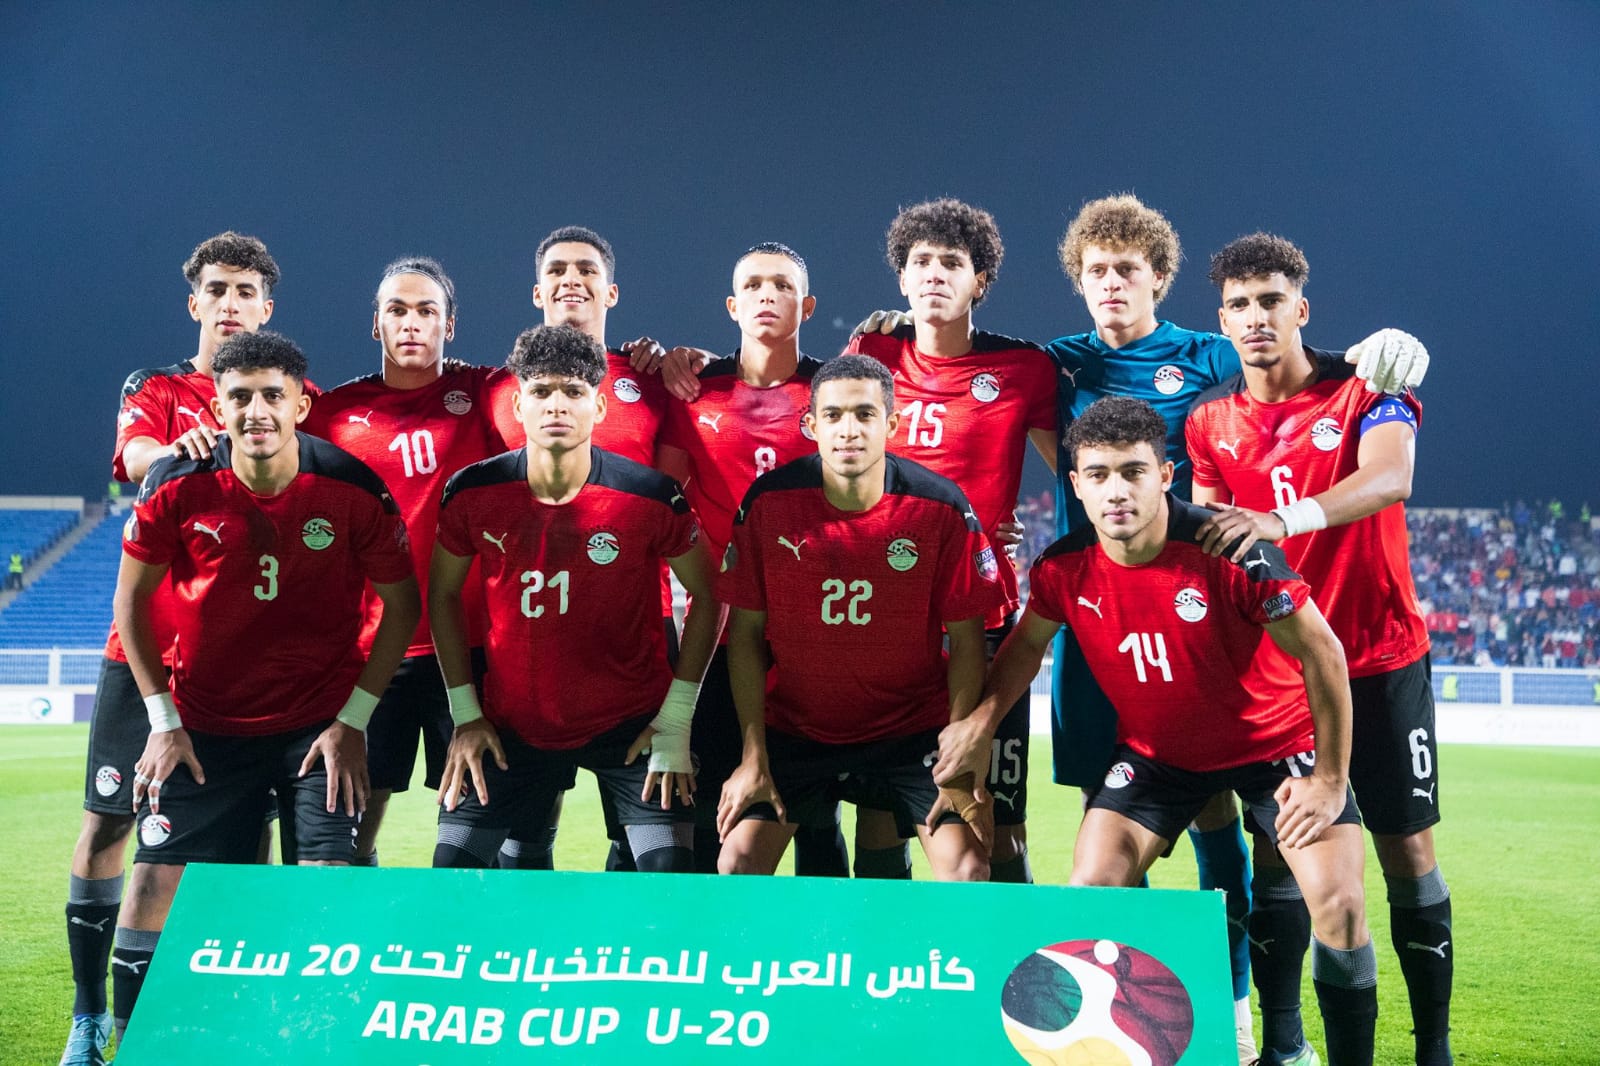 رئيس الجهاز الطبي بمنتخب الشباب يكشف أسباب تألق اللاعبين في كأس العرب